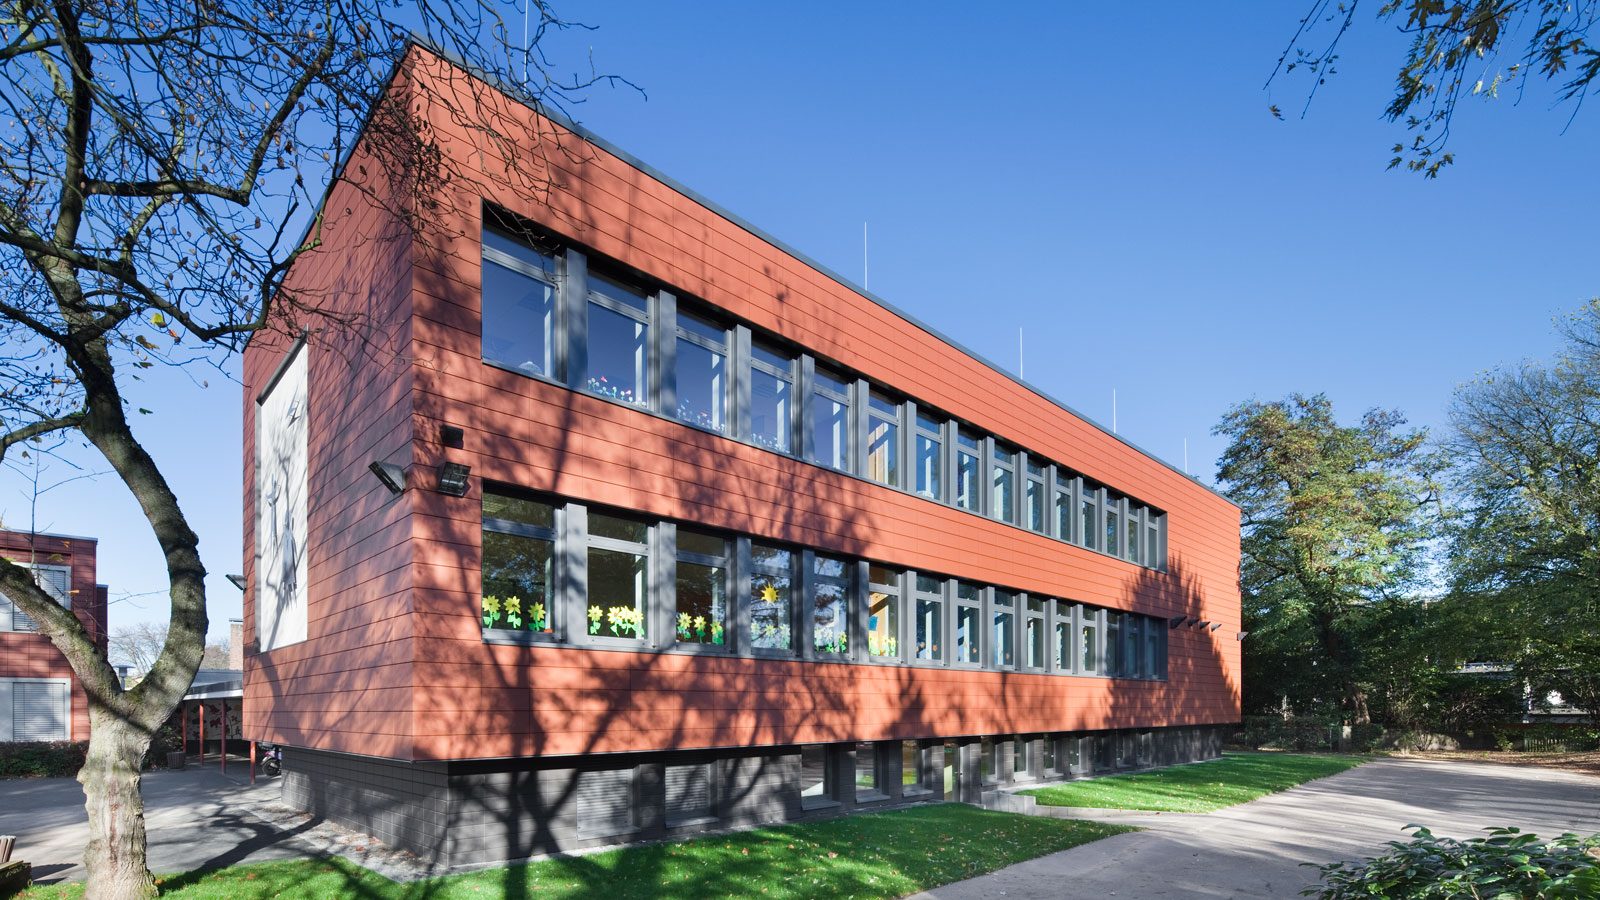 Architekt Bonn Bodelschwinghschule Friesdorf Energetische Modernisierung Bodelschwinghschule, , Koenigs Rütter Architket